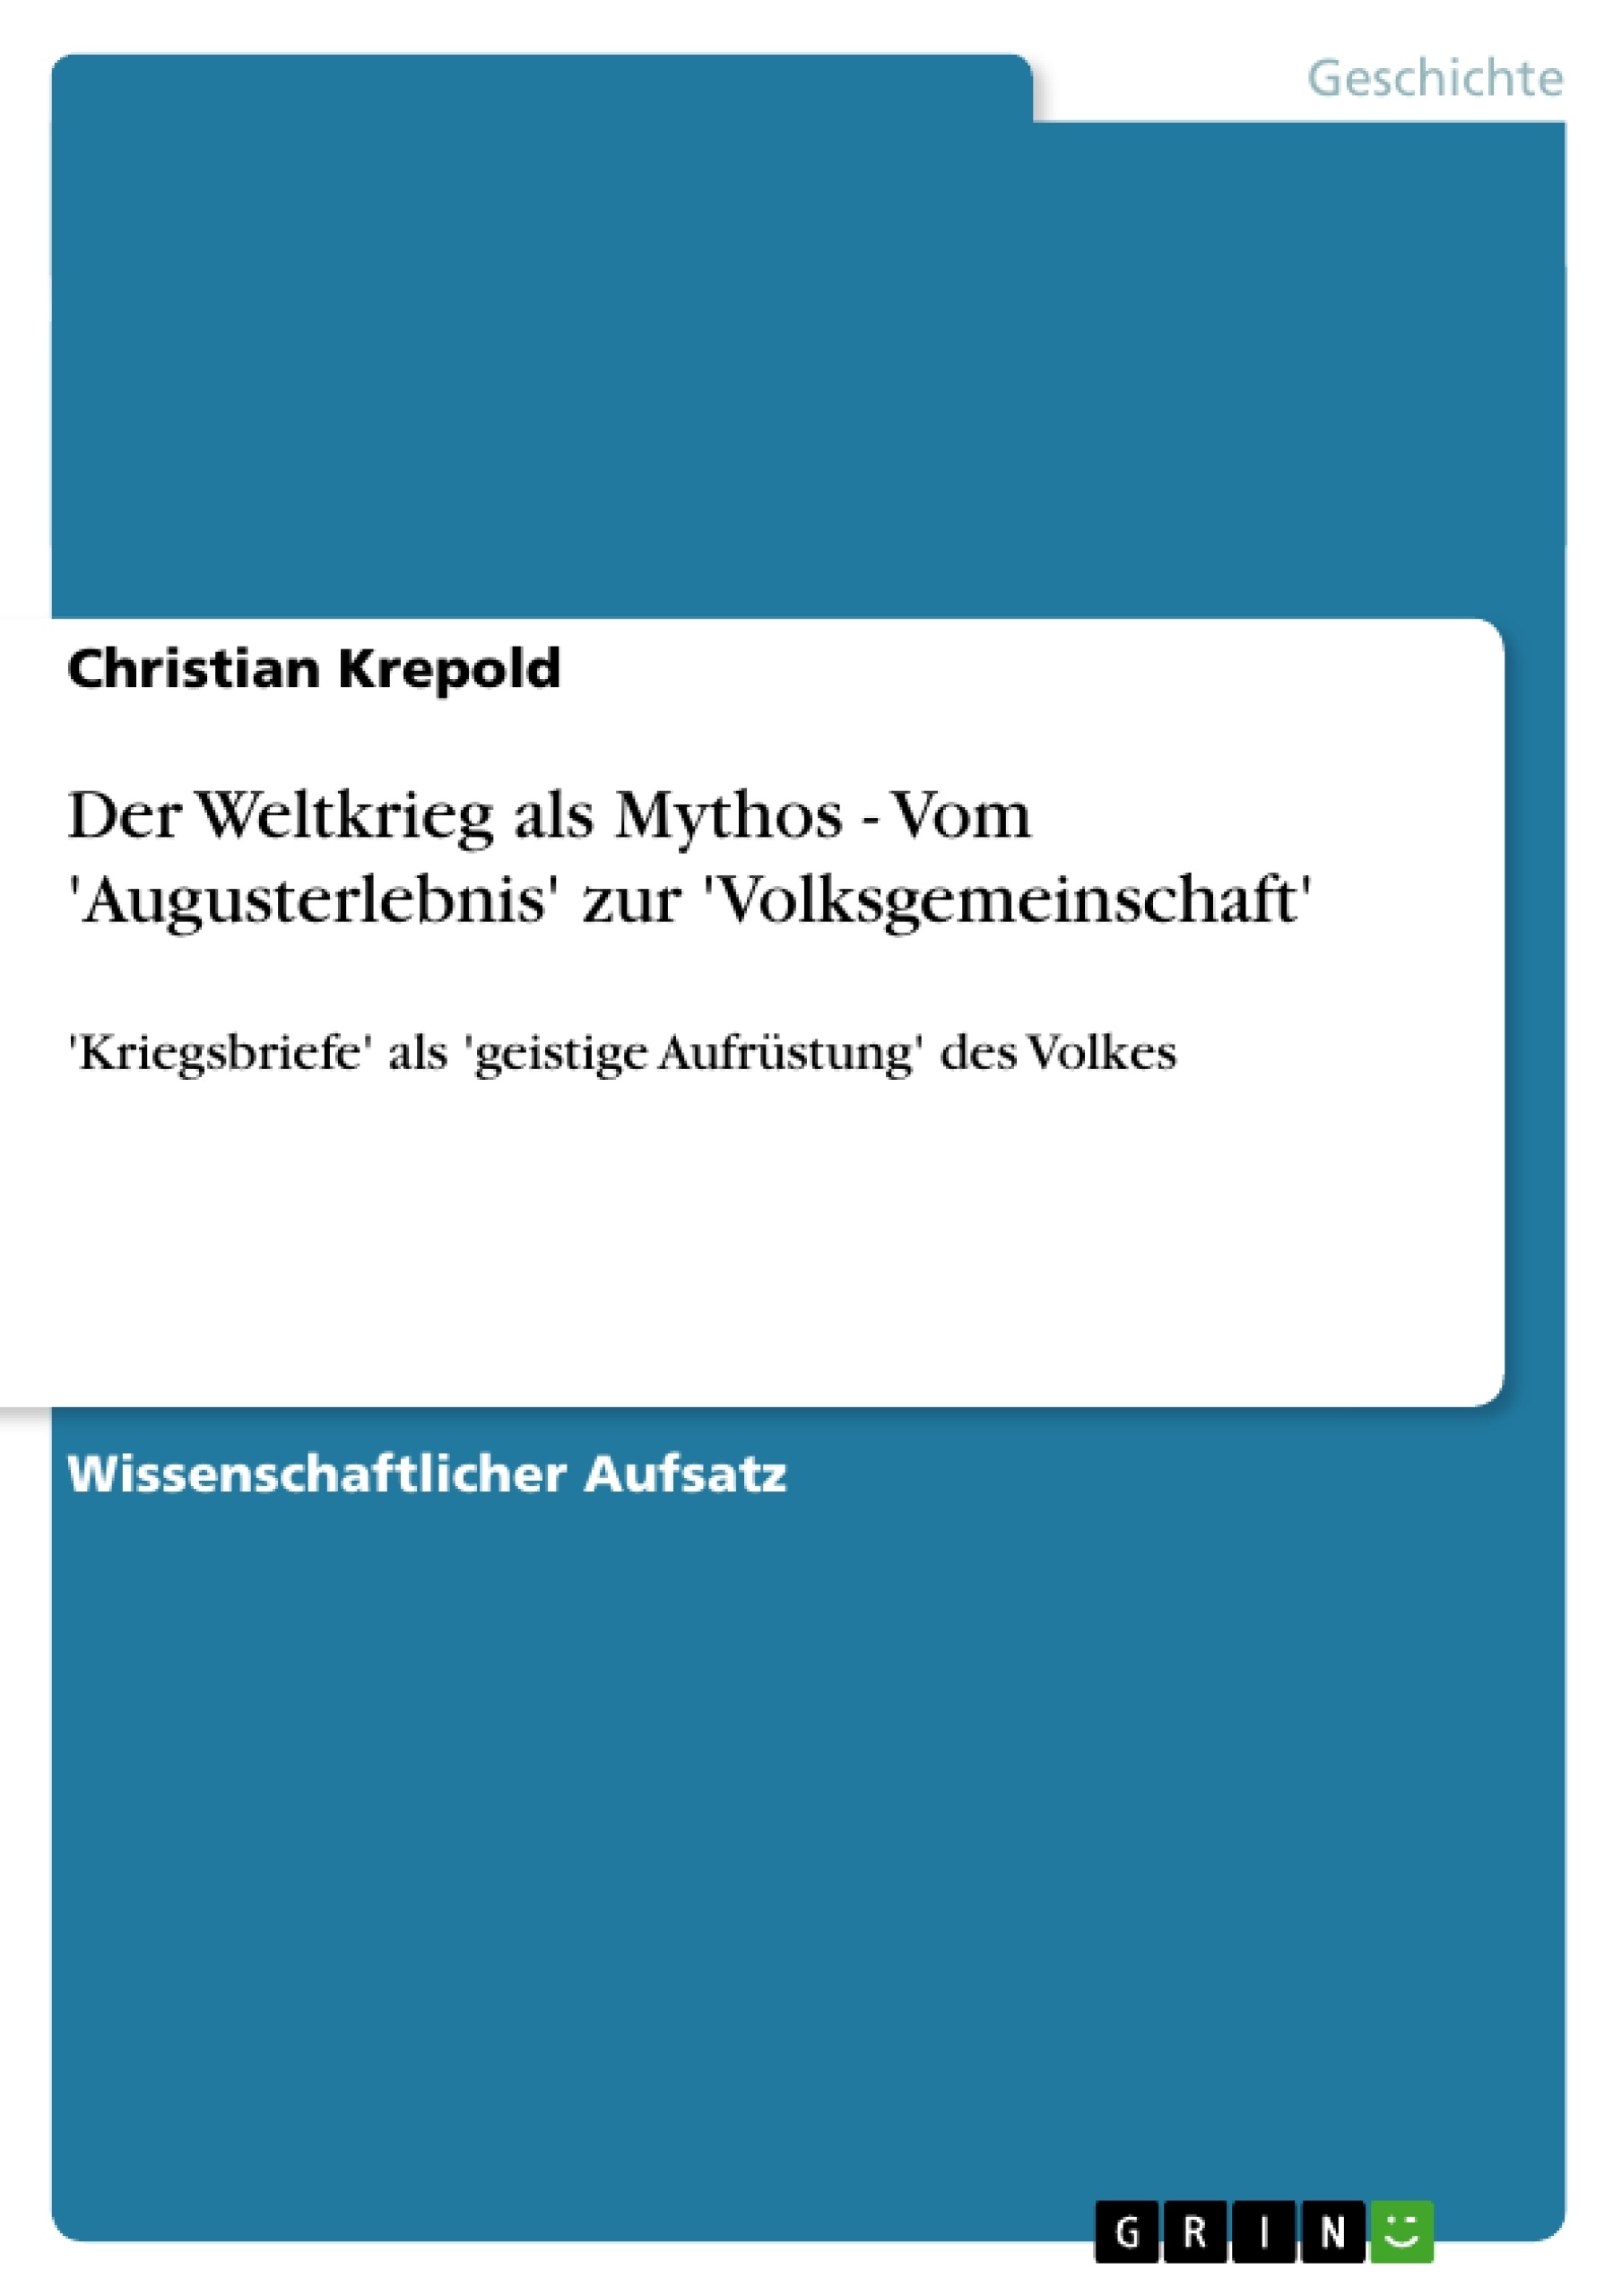 Título: Der Weltkrieg als Mythos - Vom 'Augusterlebnis' zur 'Volksgemeinschaft'